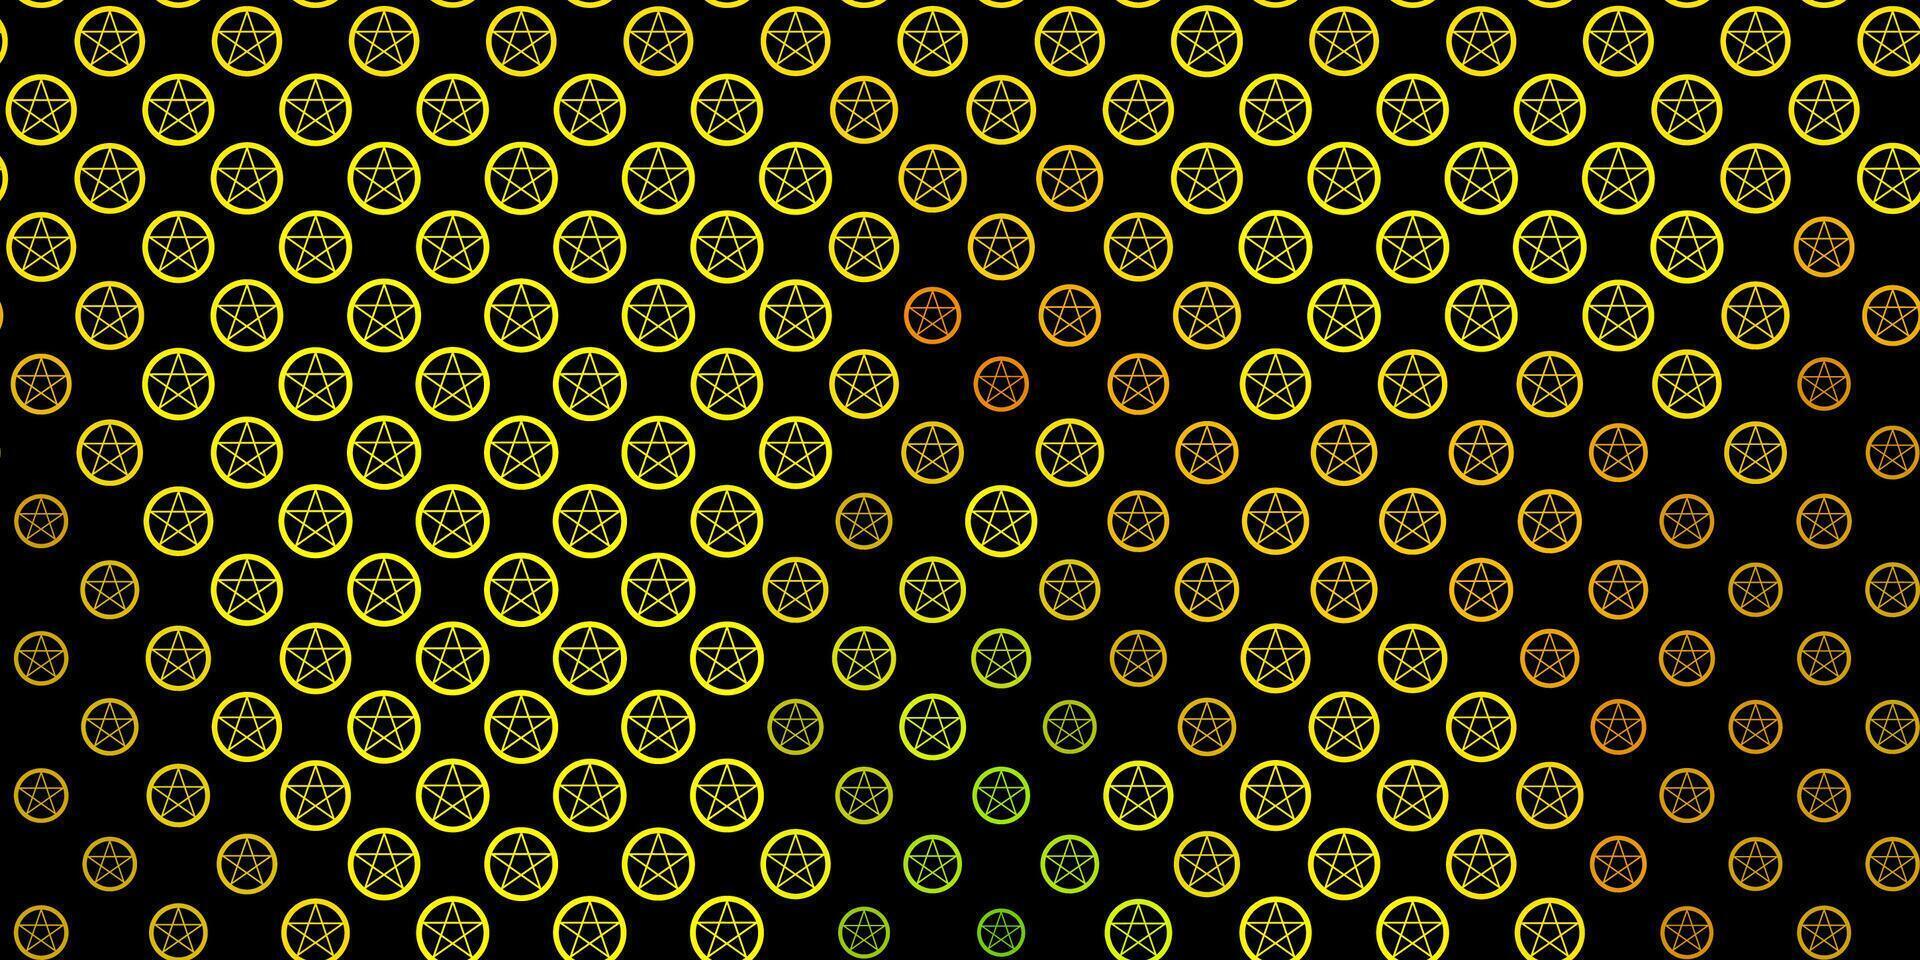 mörkgrön, gul vektorstruktur med religionssymboler. vektor